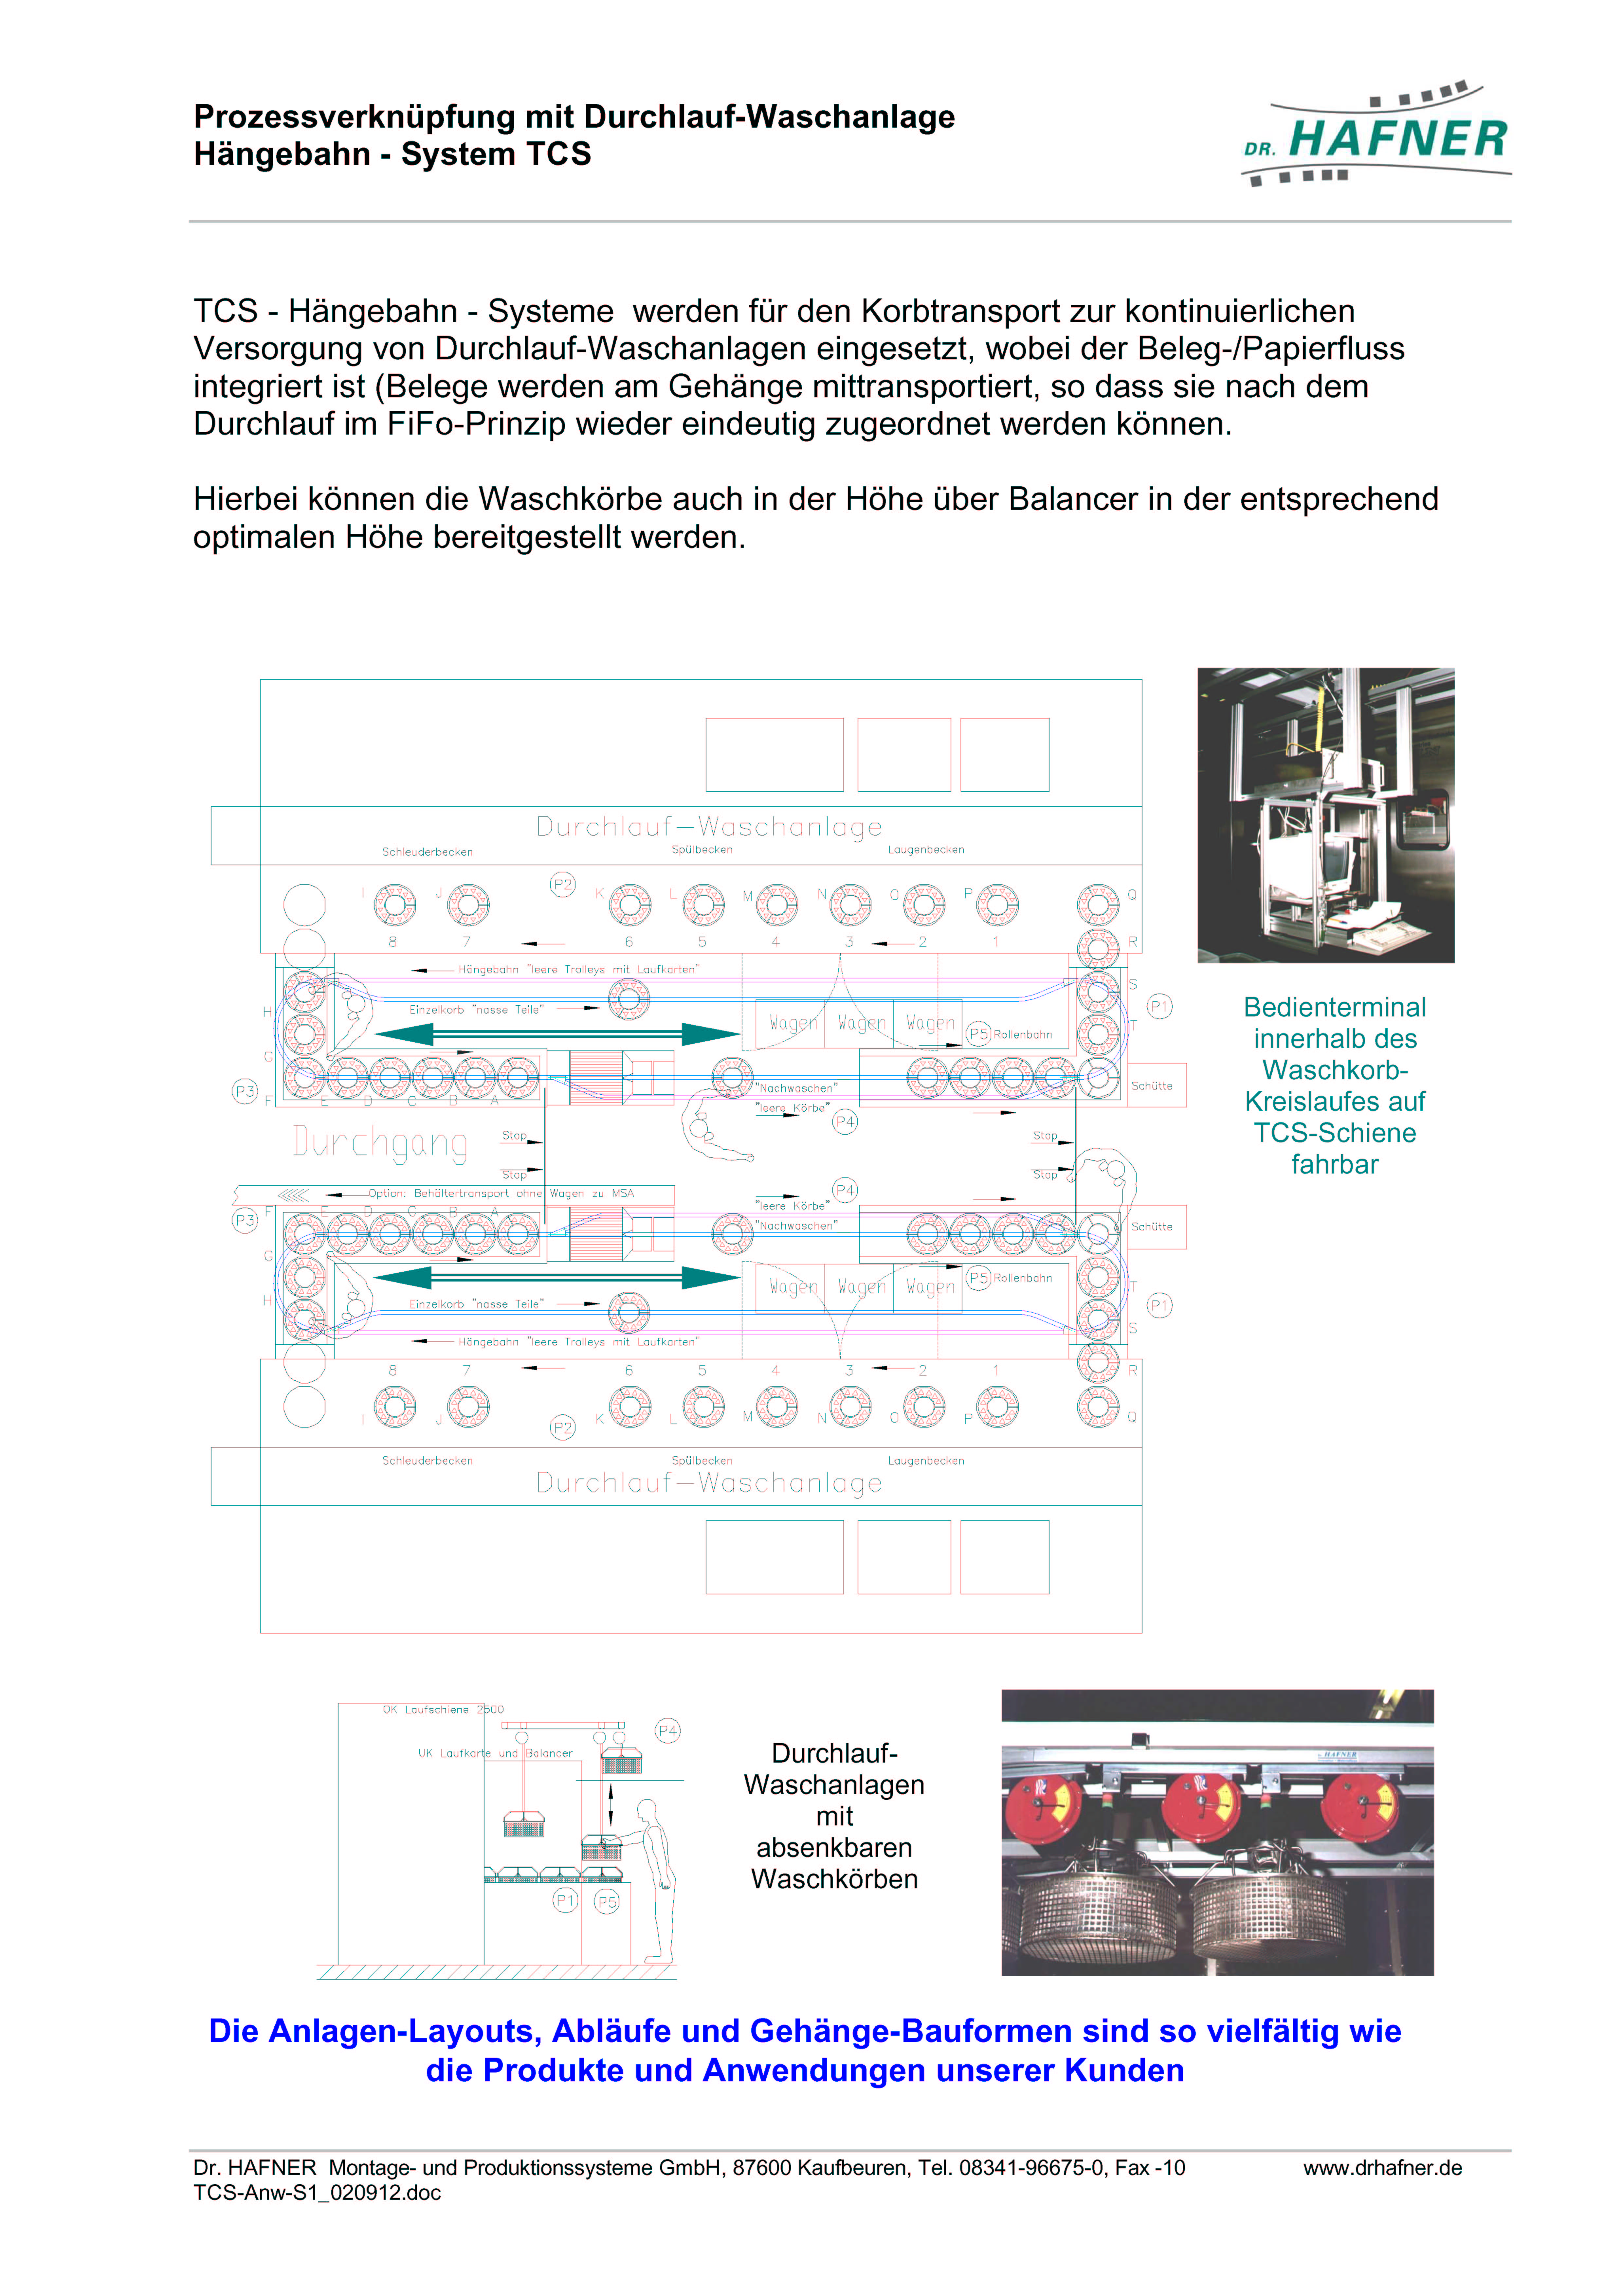 Dr. HAFNER_PKWP_41 Prozessverknüpfung Durchlauf Waschanlage Hängebahn